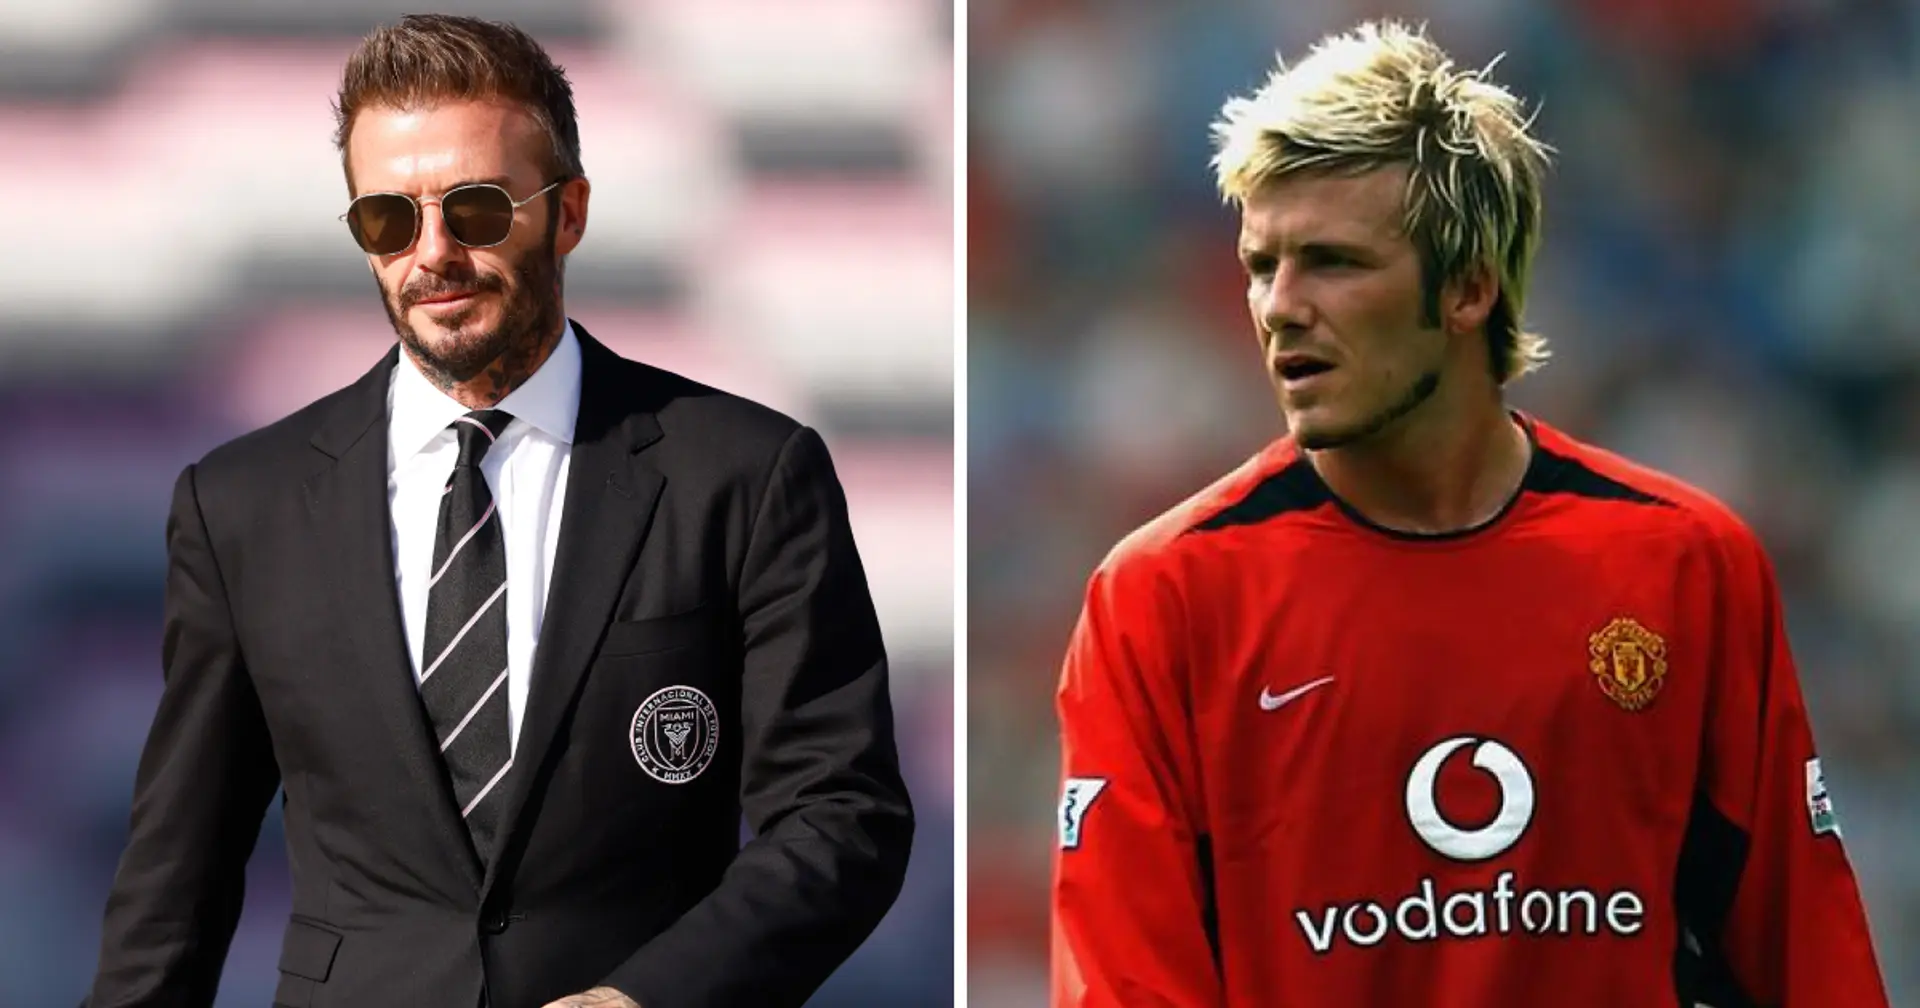 "Peu de footballeurs faisaient ça à ce moment-là" : David Beckham à propos de son cadeau spécial de 50 000 £